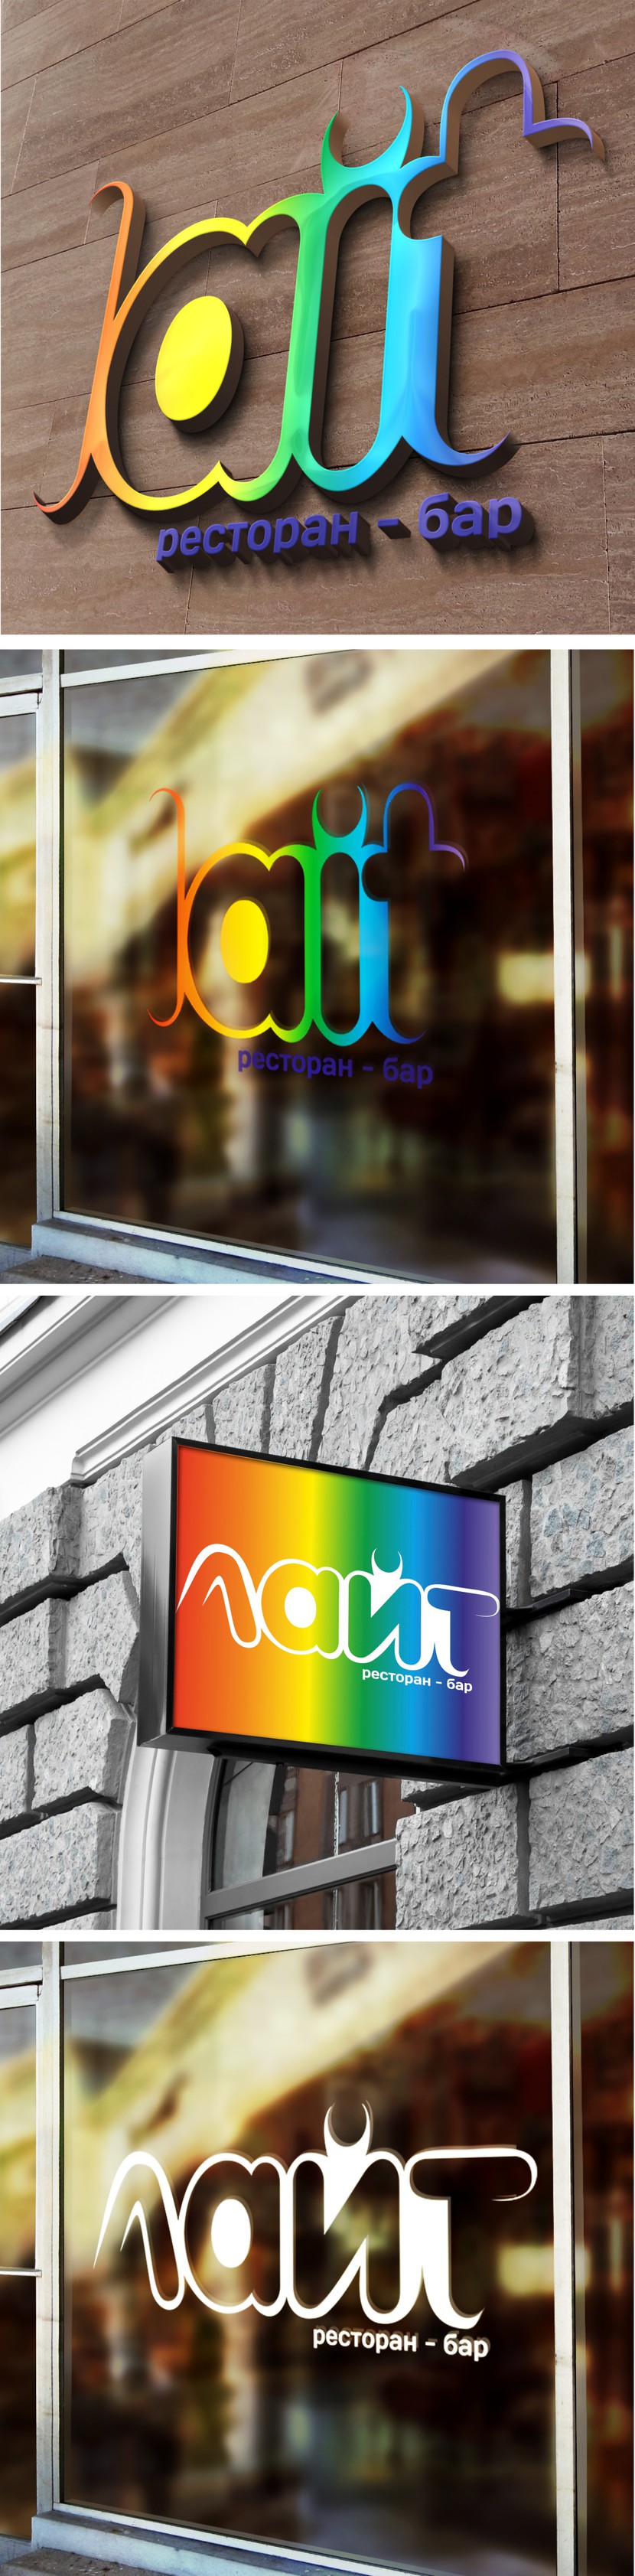 Варианты лого на вывесках - Требуется разработать фирменный стиль для бара-ресторана "LAIT"